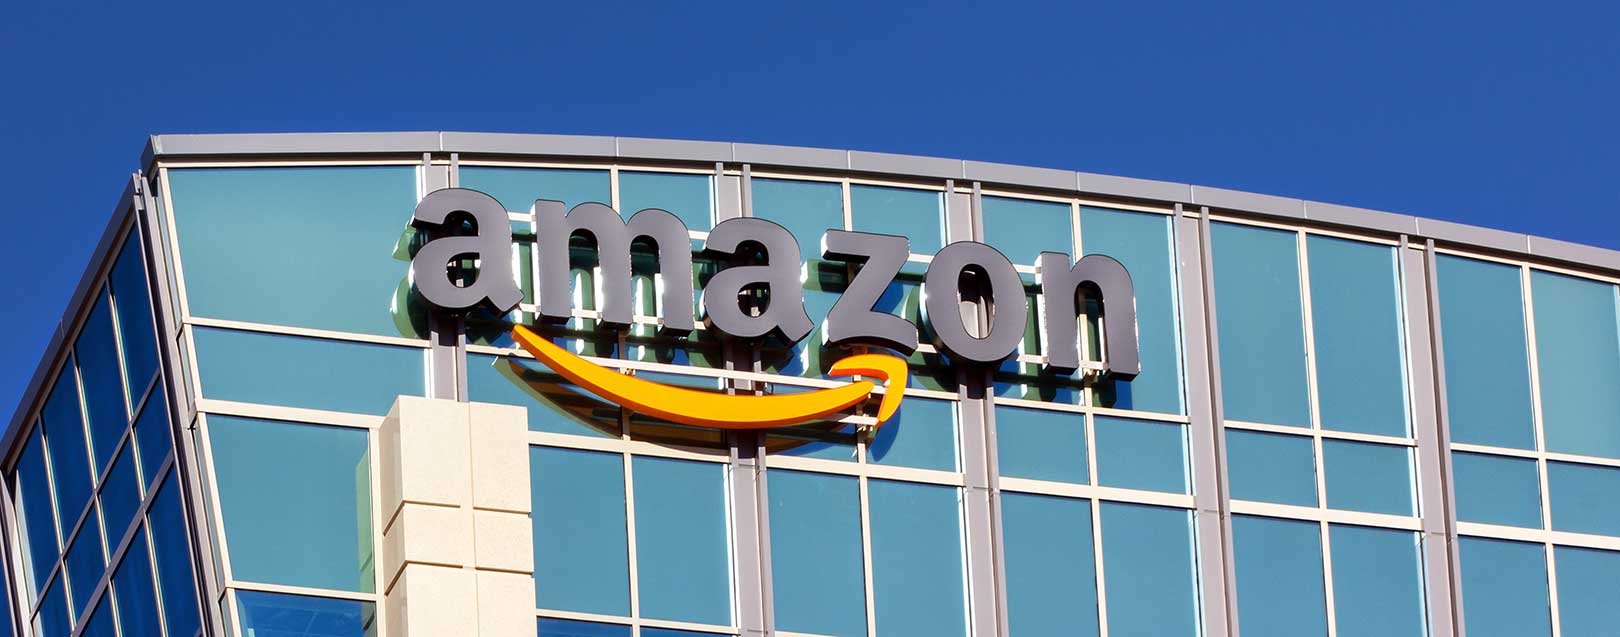 Amazon invests in India, despite e-commerce rules